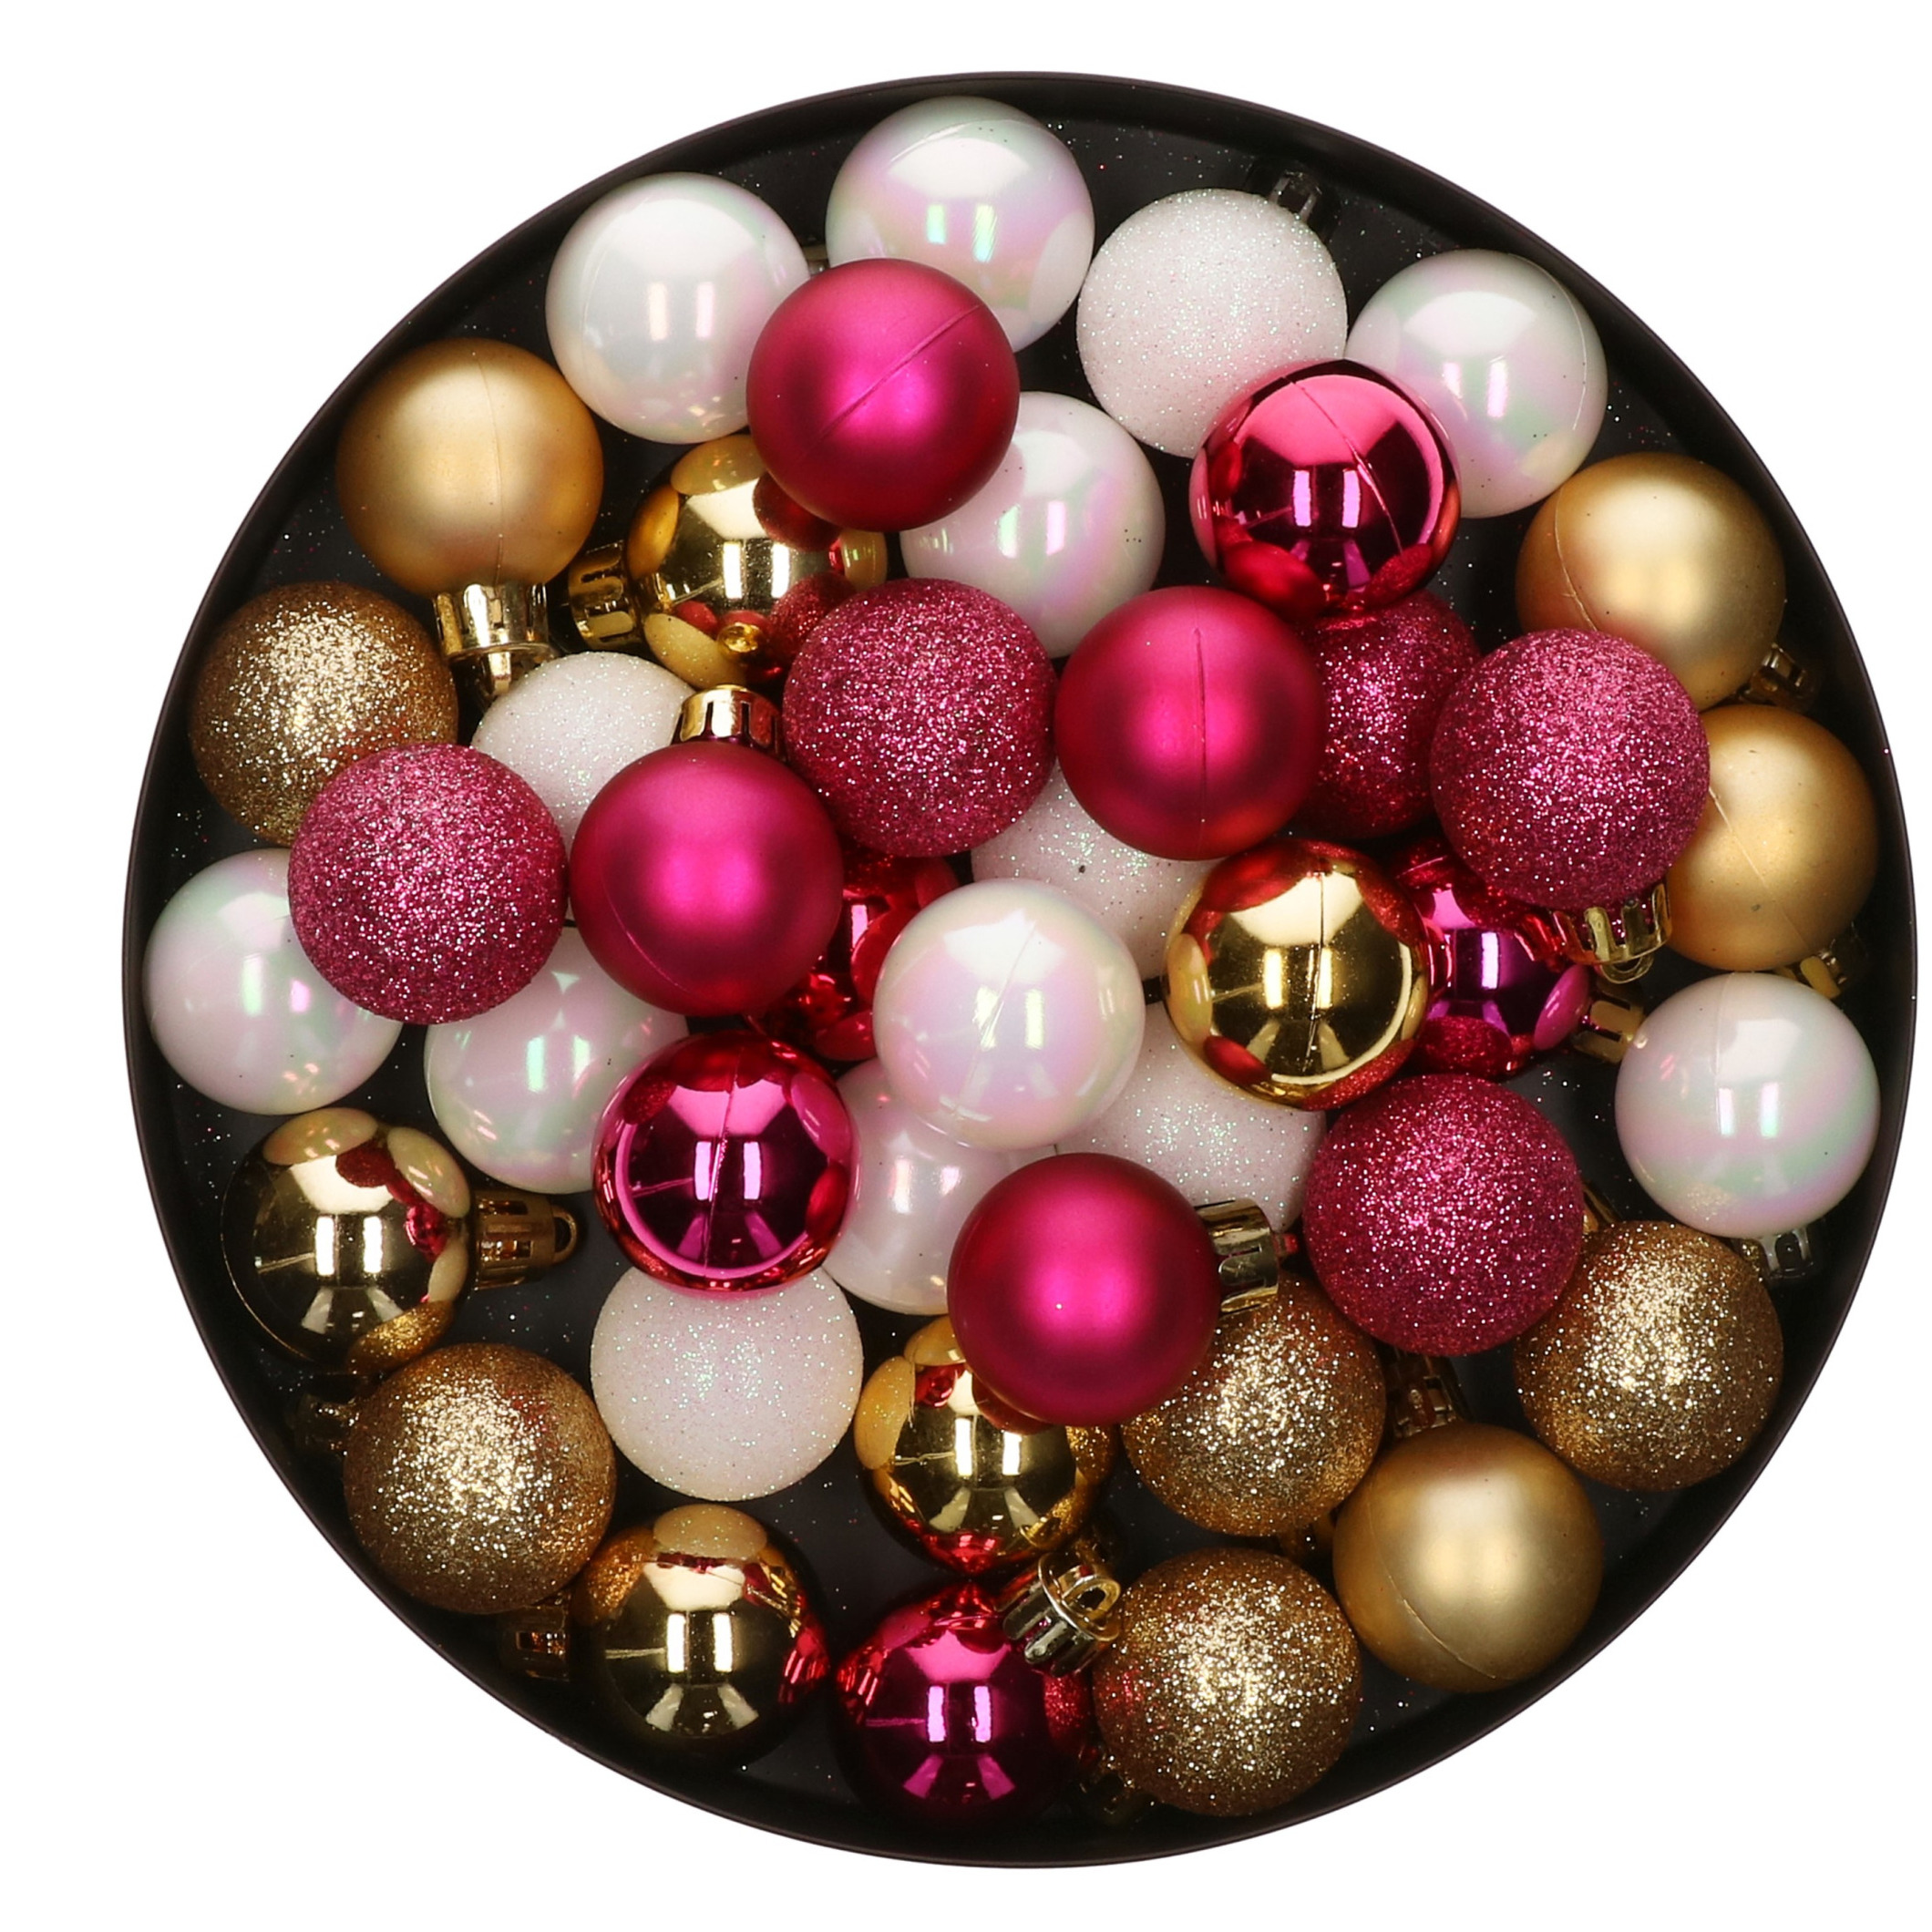 42x Stuks kunststof kerstballen mix bessen roze-goud-parelmoer wit 3 cm